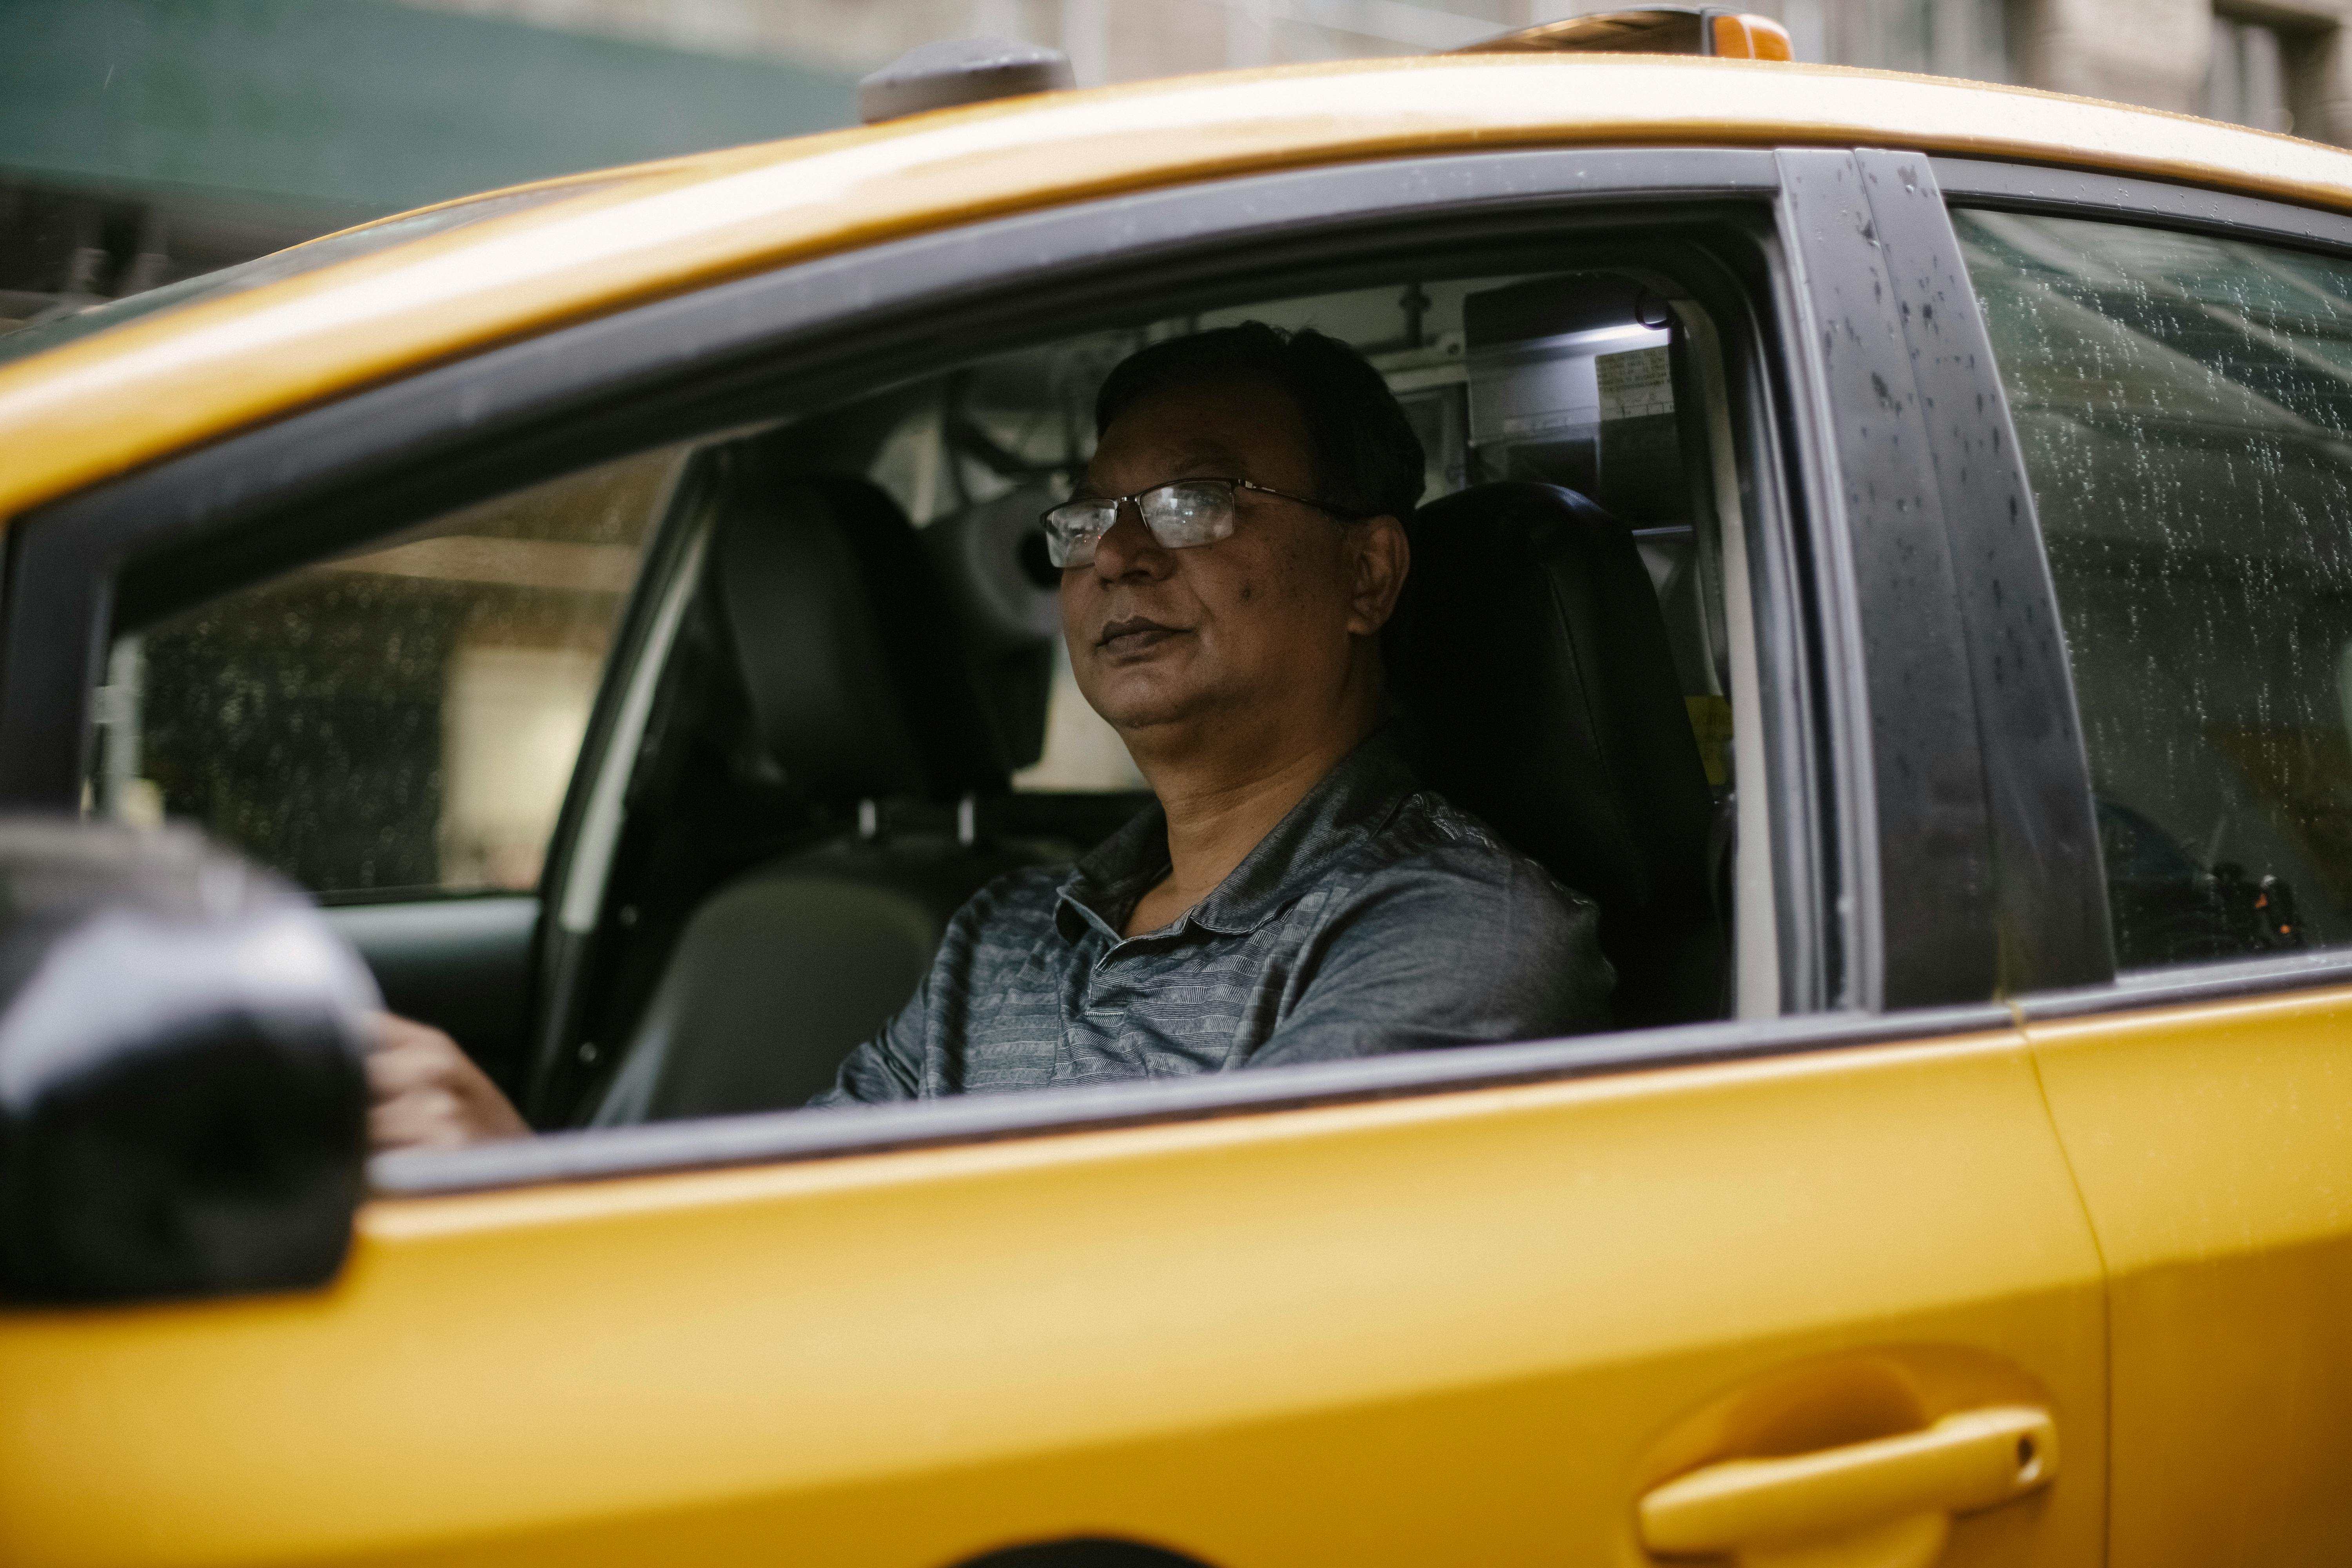 A cab driver | Source: Pexels